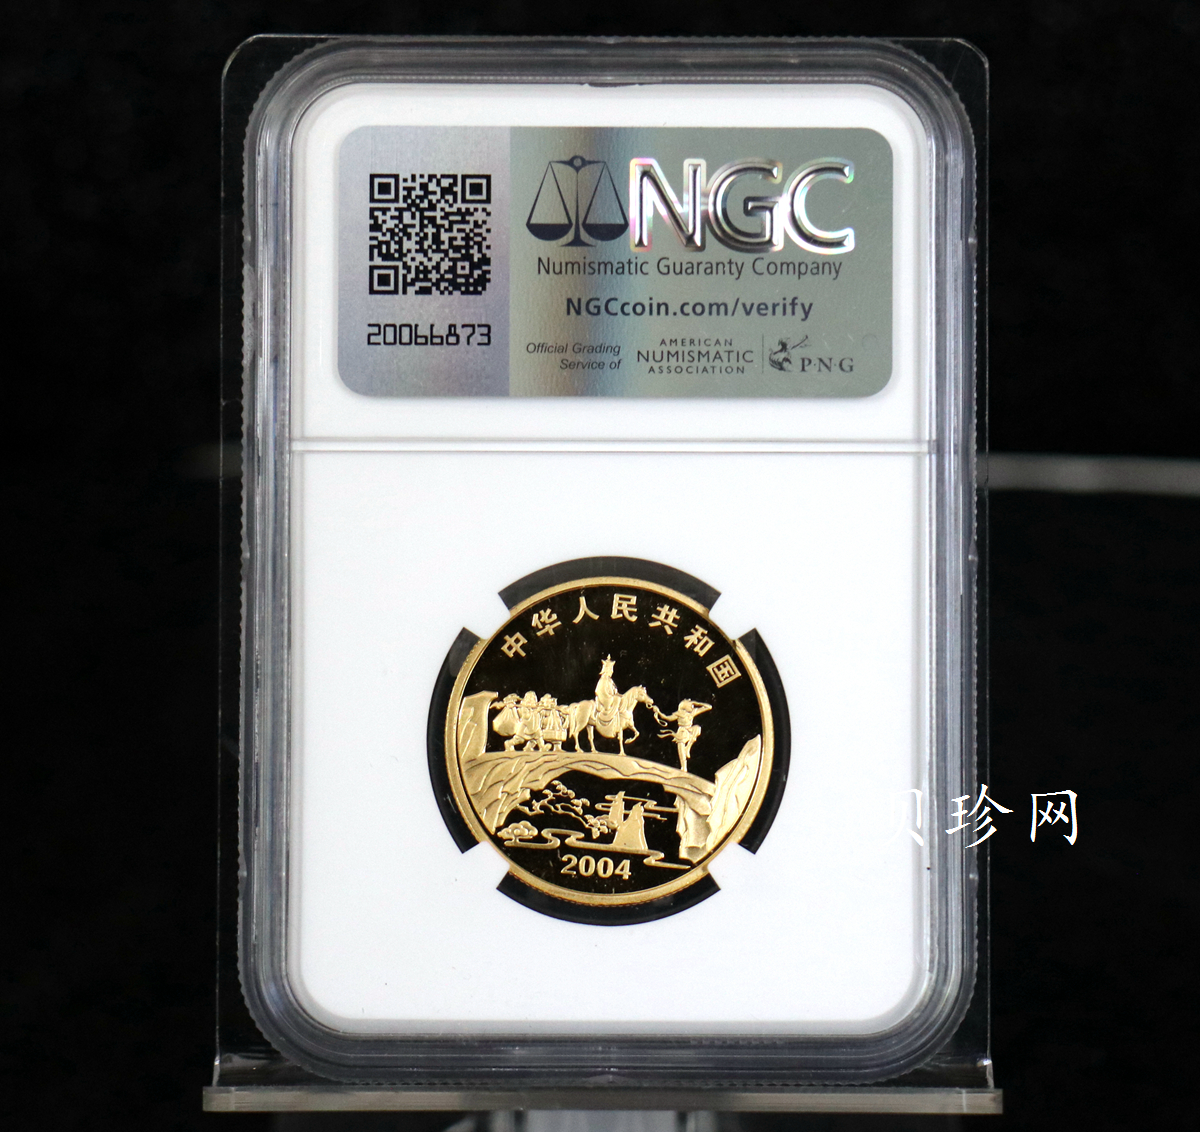 【040502】2004年中国古典文学名著——《西游记》彩色金纪念币(第2组)1/2盎司彩色精制金币